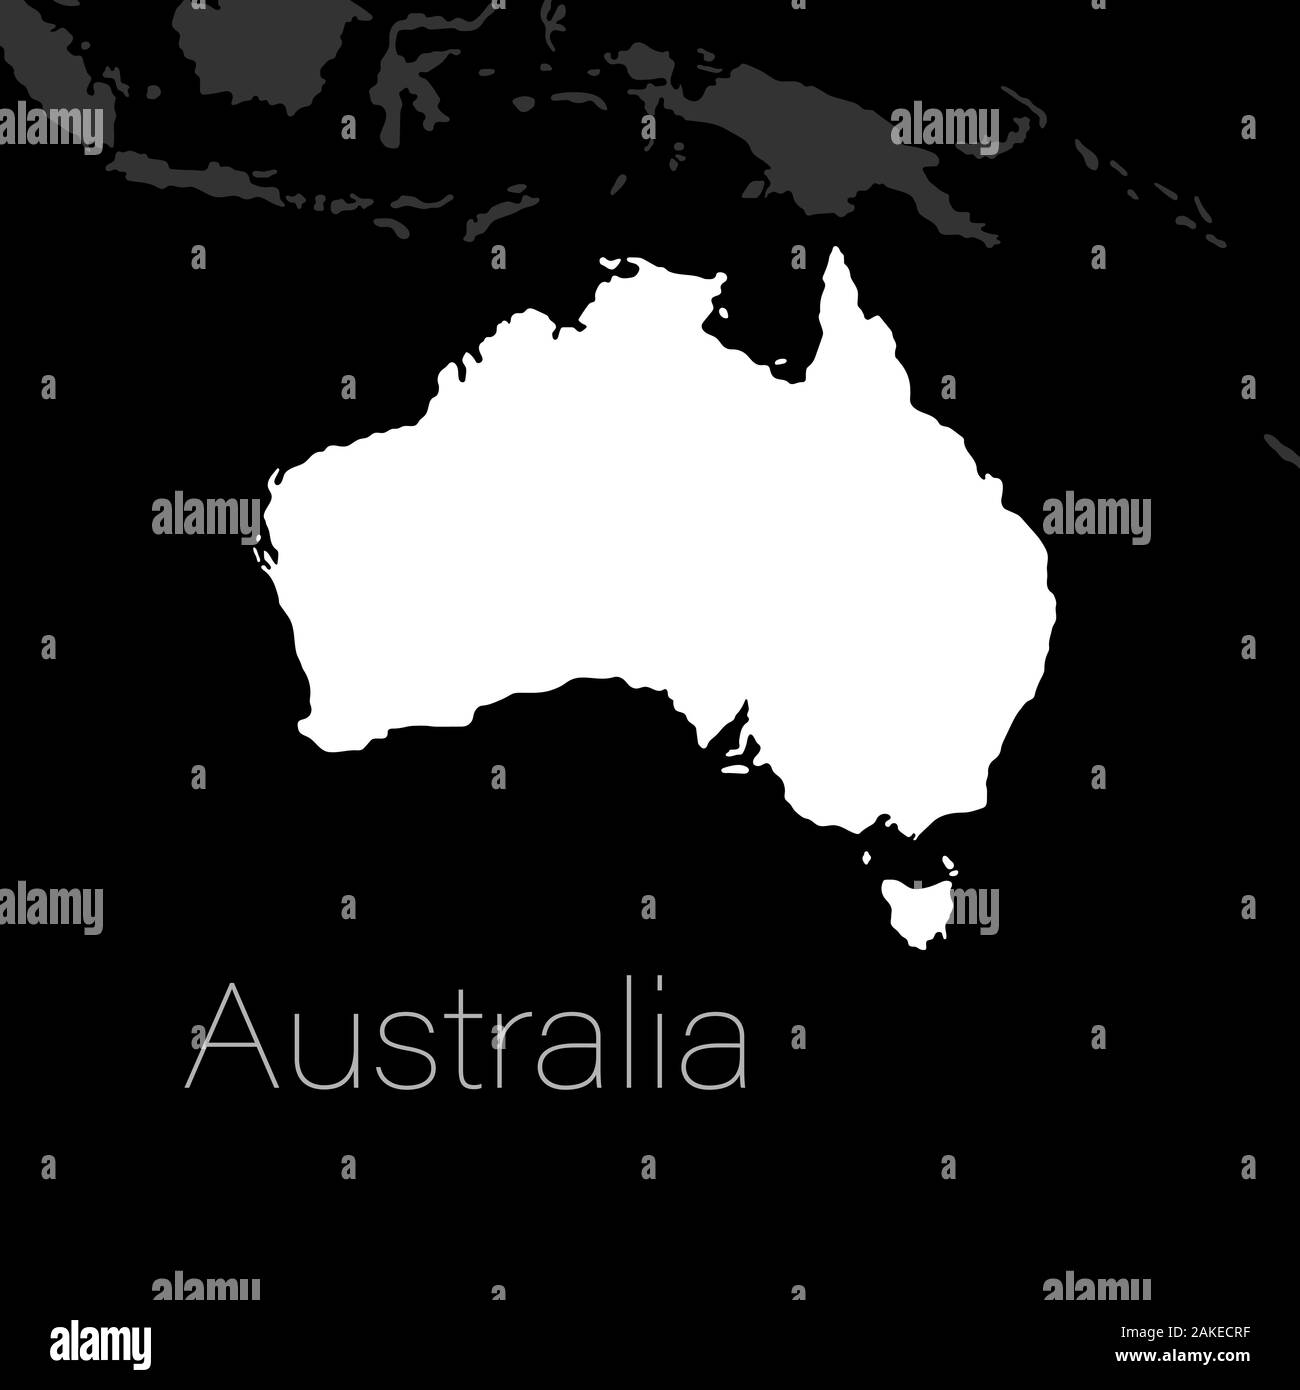 Australia mappa silhouette con le isole vicine. Il minimo del modello di piano. Illustrazione Vettoriale